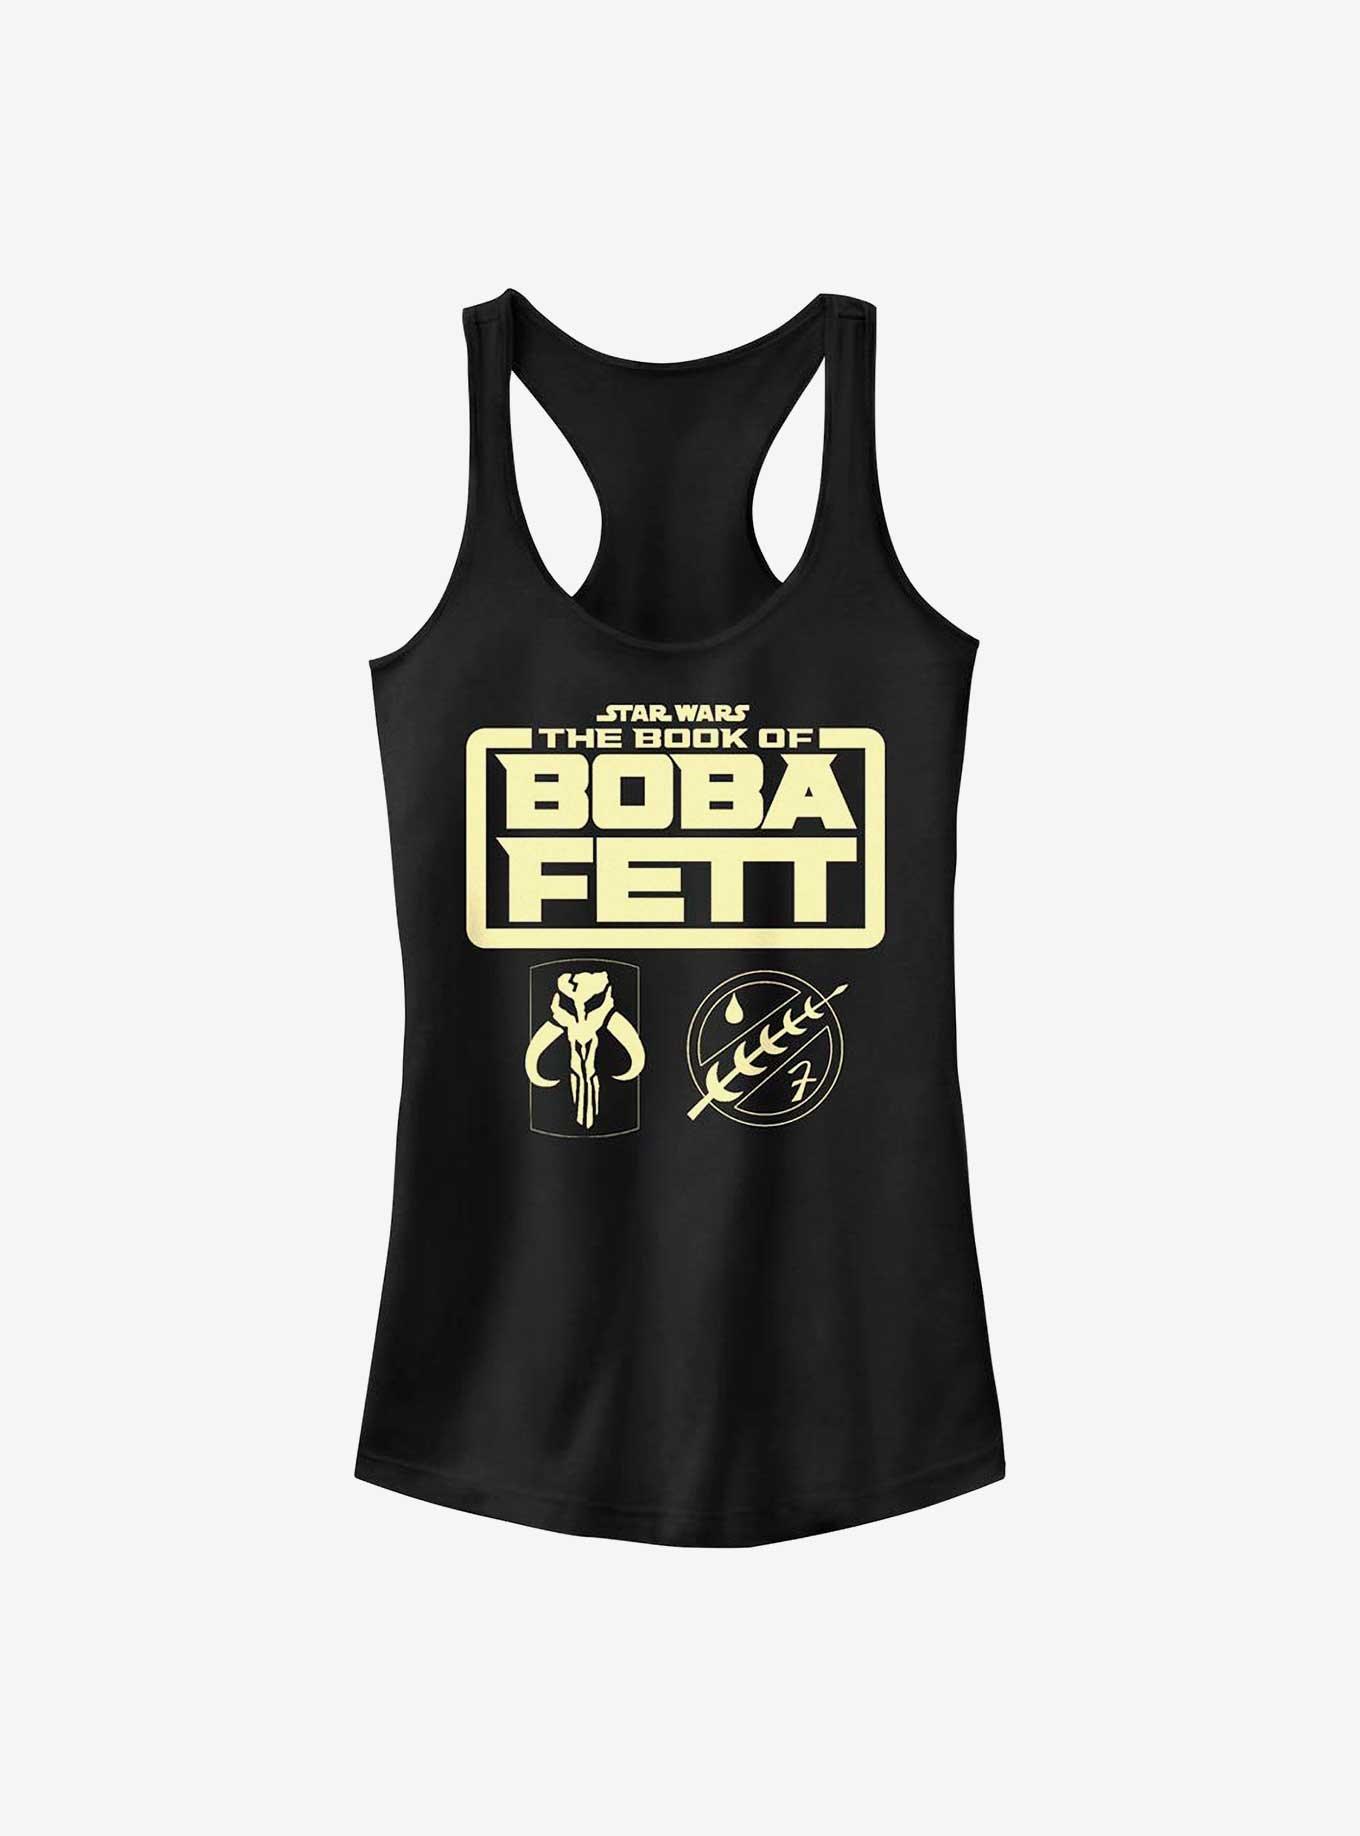 Star Wars The Book Of Boba Fett Armor Logo Girls Tank